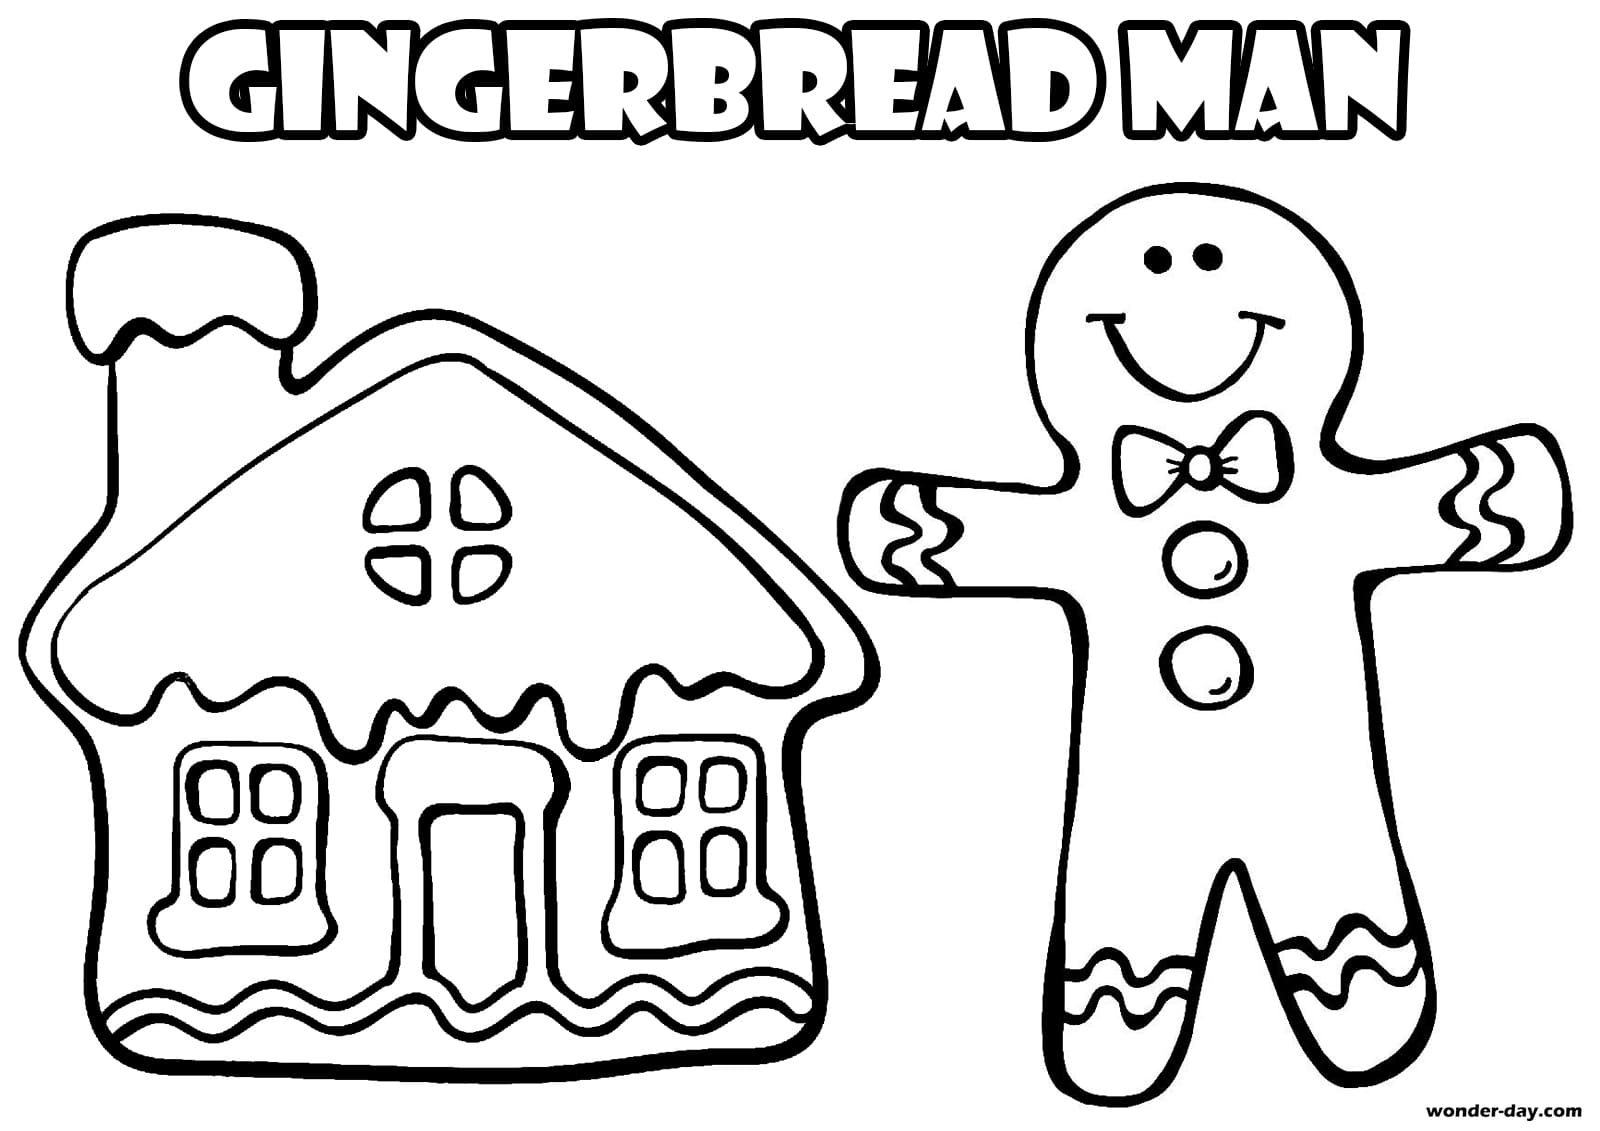 gingerbread man for coloring Omino zenzero colorare colouring lebkuchenmann marzapane gratuitamente